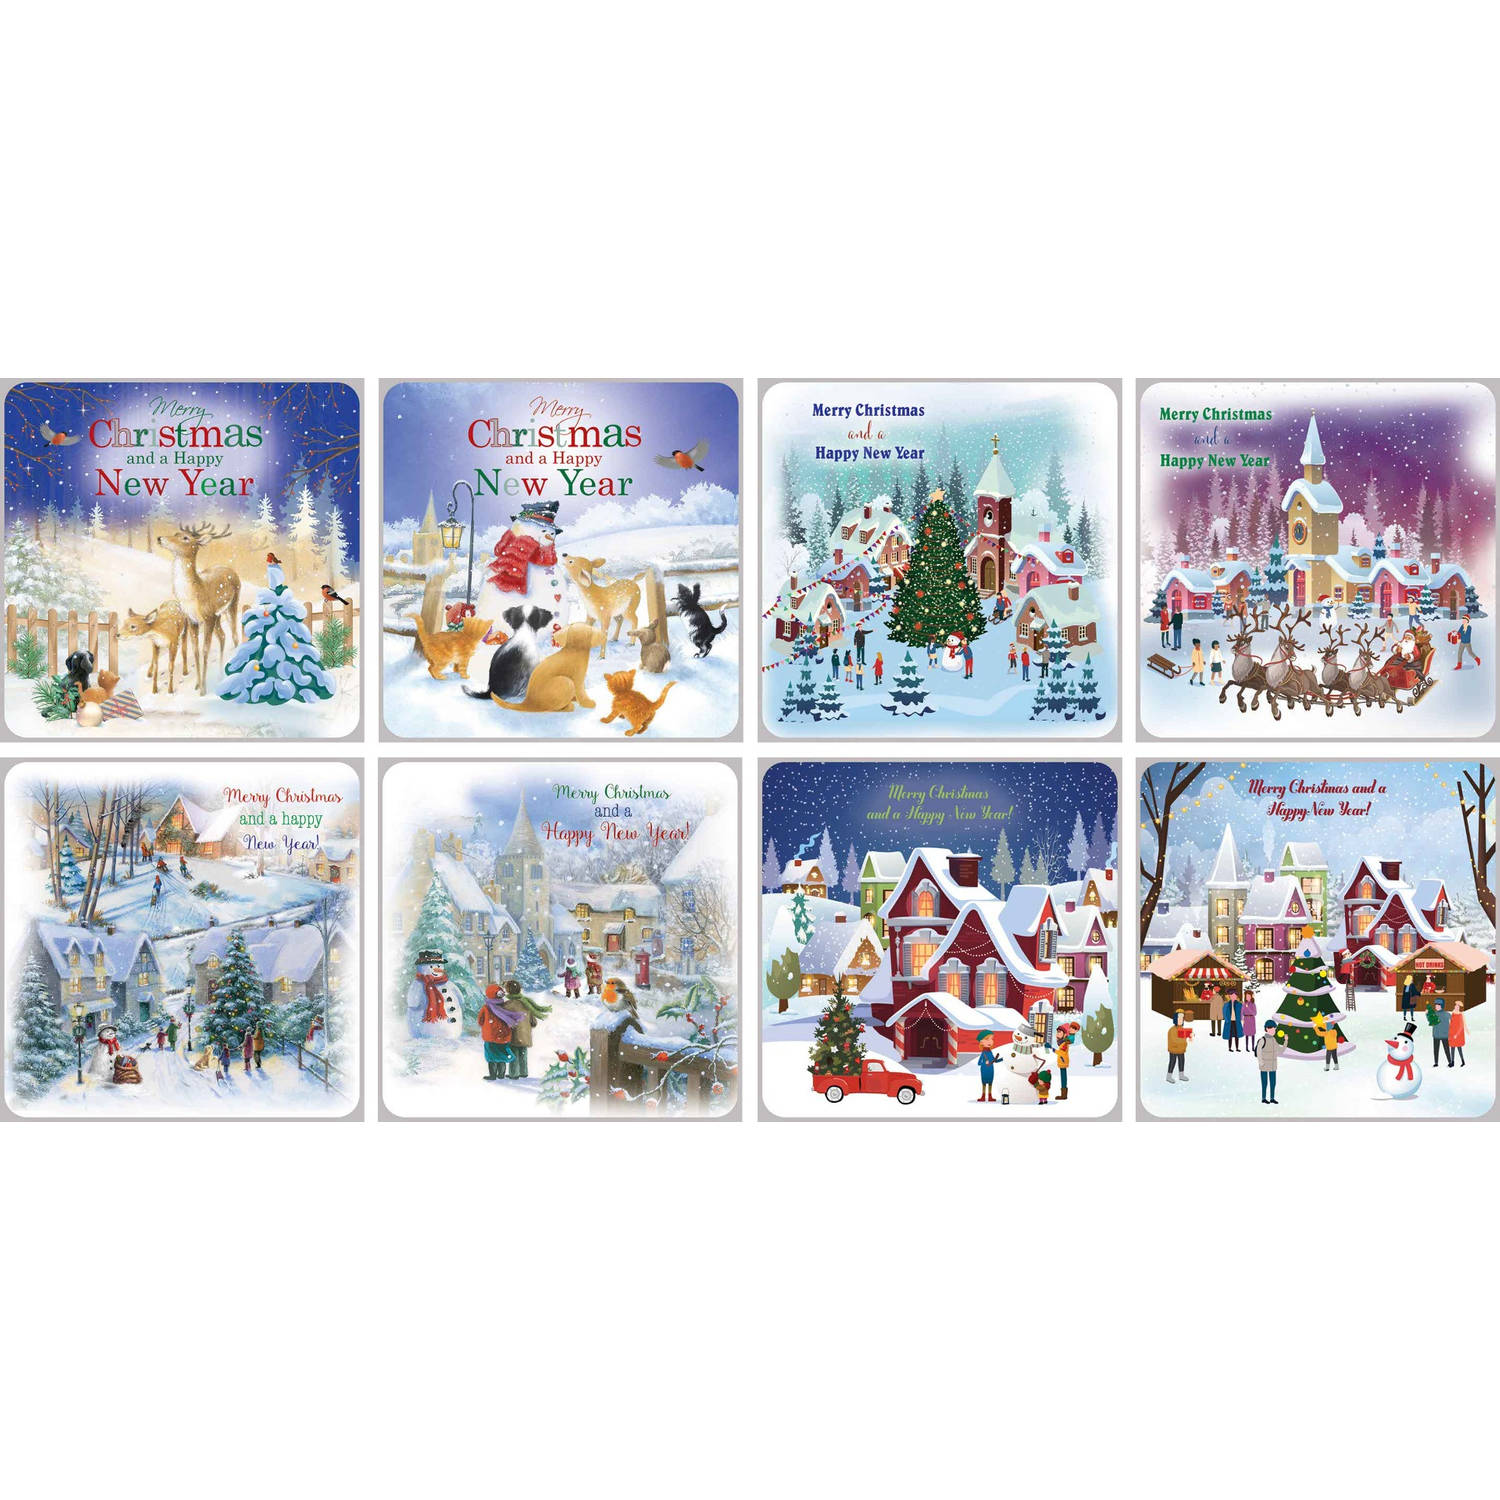 Assortiment Engelstalige 3D Kerst kaarten 2020 - 15 x 15 cm - 32 stuks